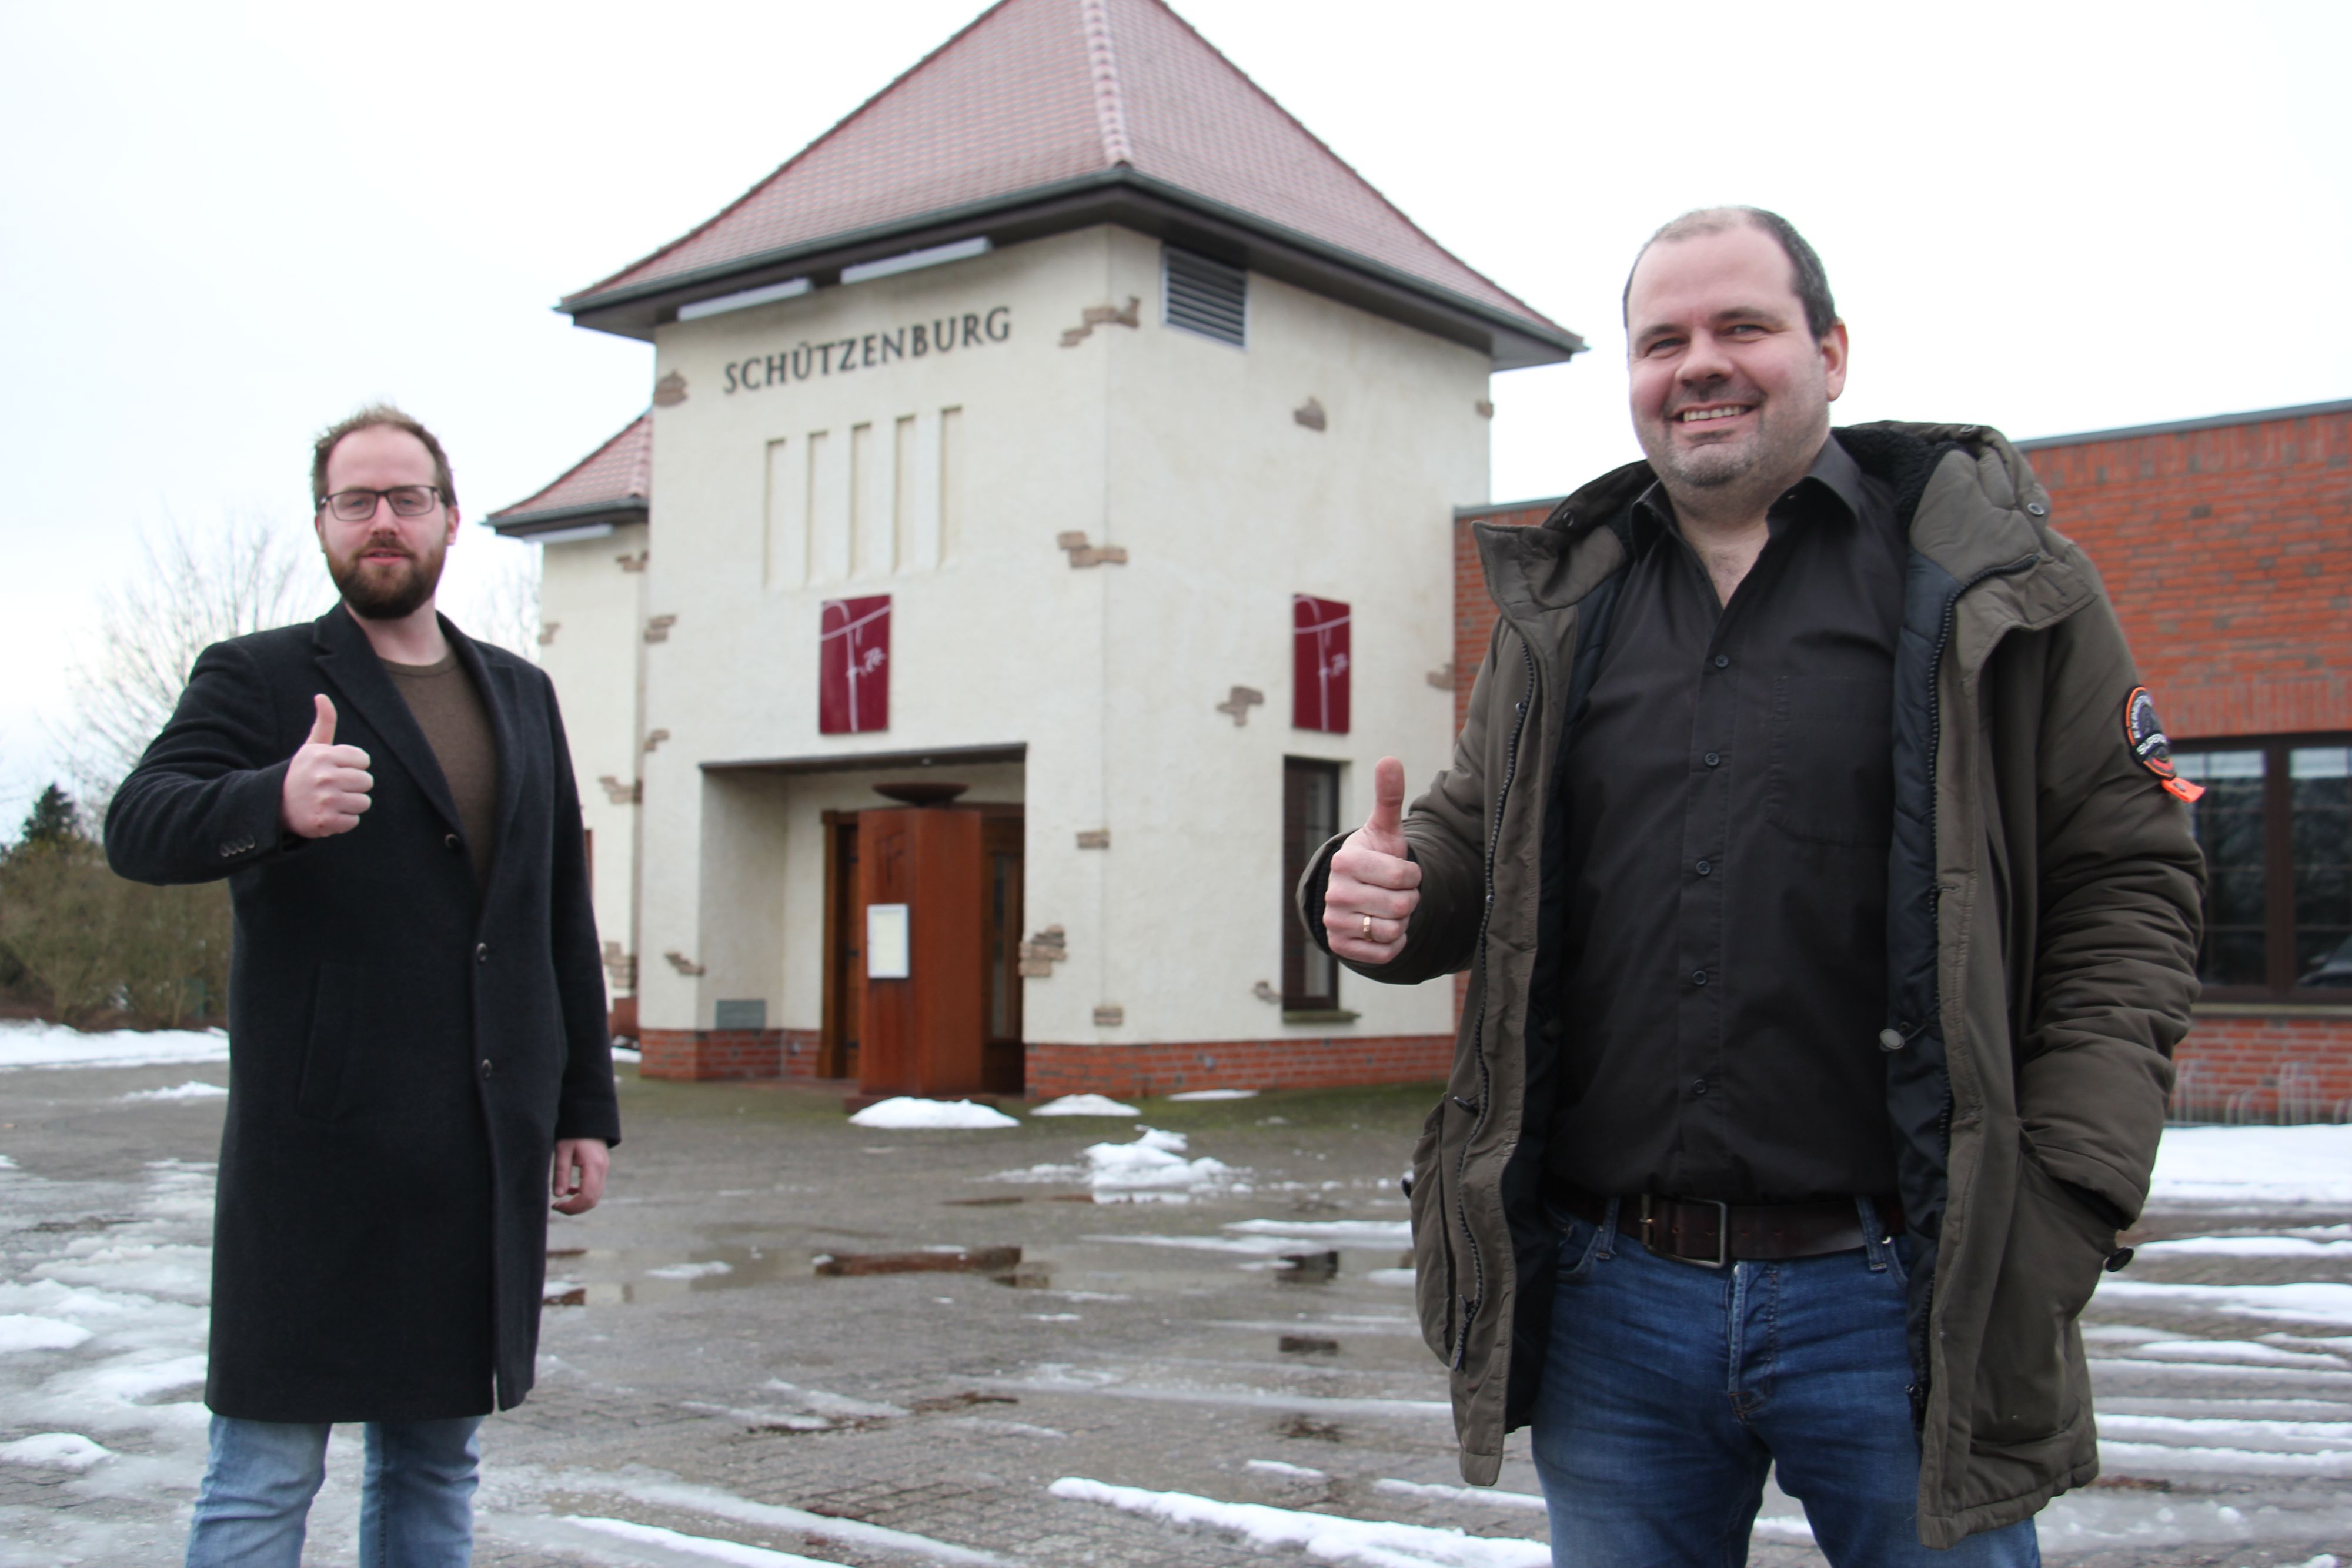 Daumen hoch für das Vereinsleben: Gastronom Matthias Kröger (rechts) und Schützenpräsident Simon Spille hoffen auf eine gute Zusammenarbeit in der Schützenburg. Foto: Speckmann